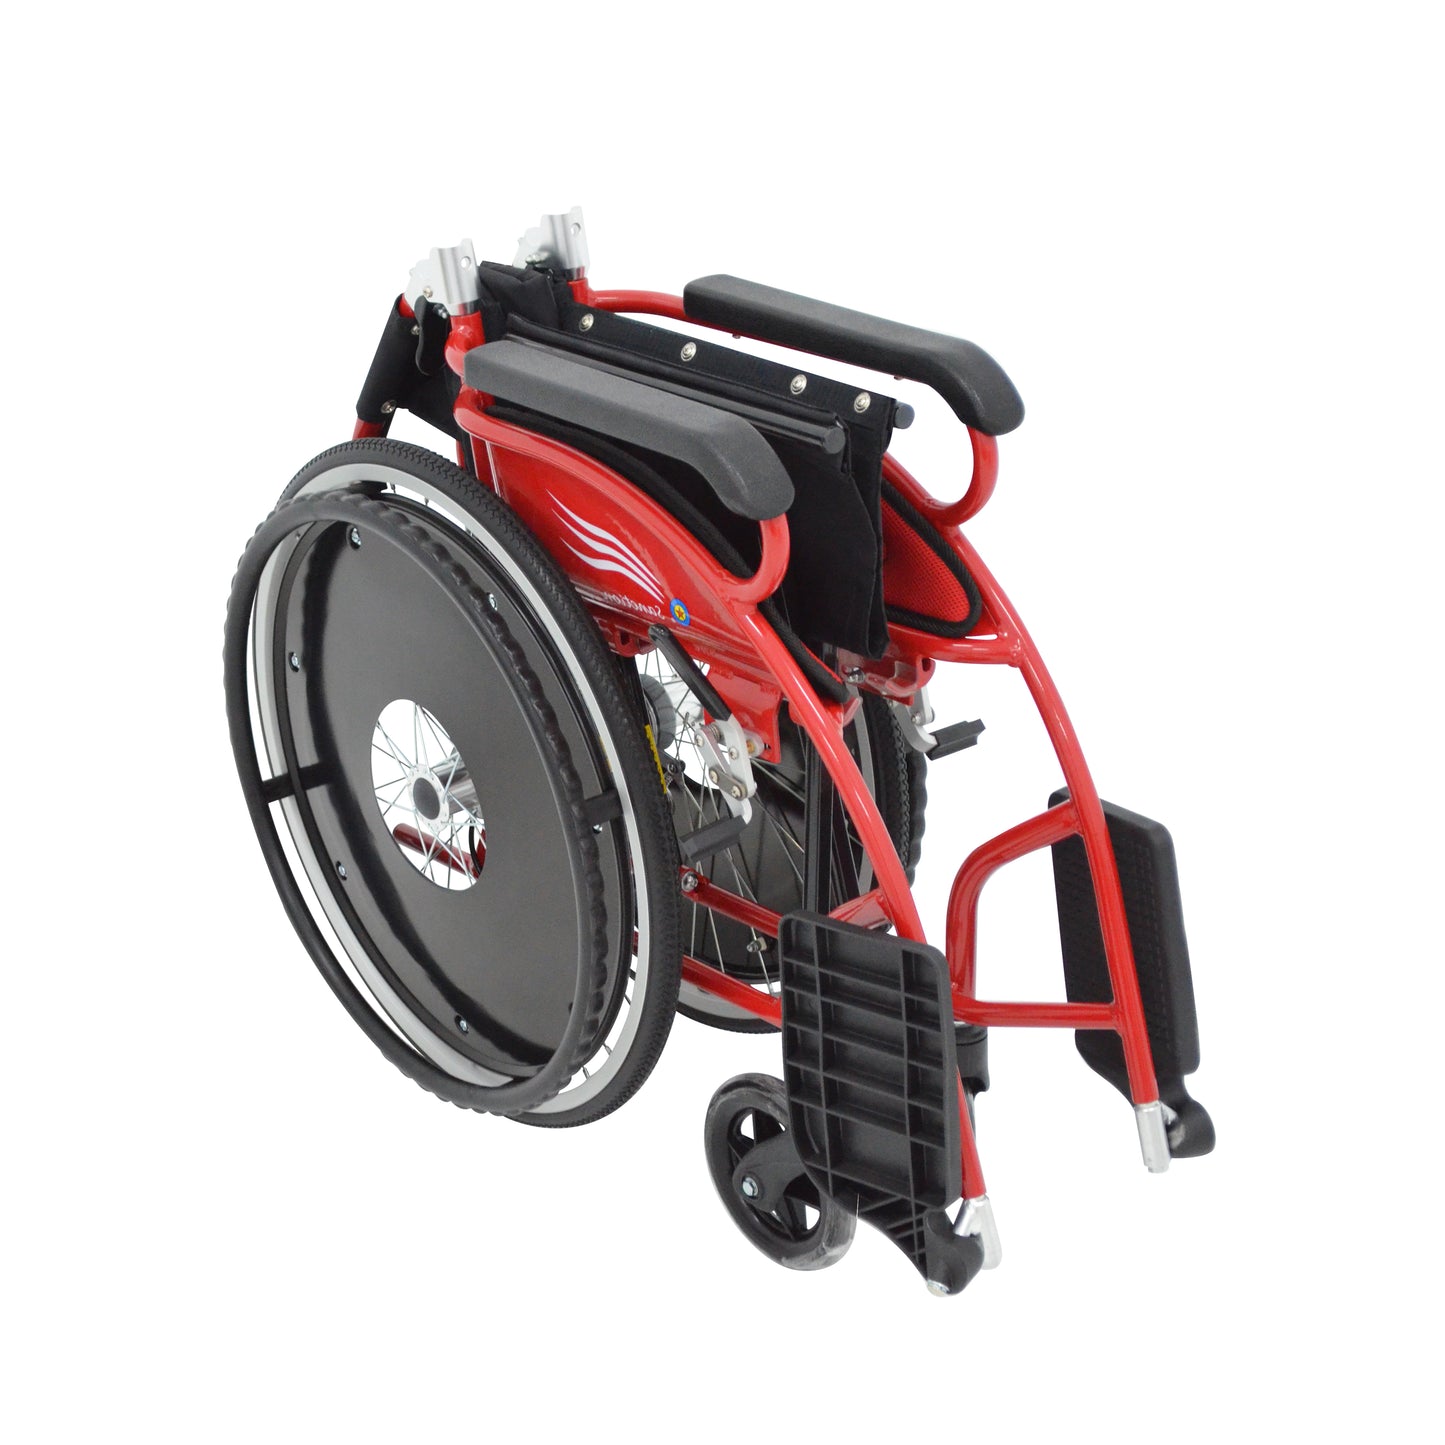 9D22 超輕量輪椅 - Sanction Industry 祥巽輔具